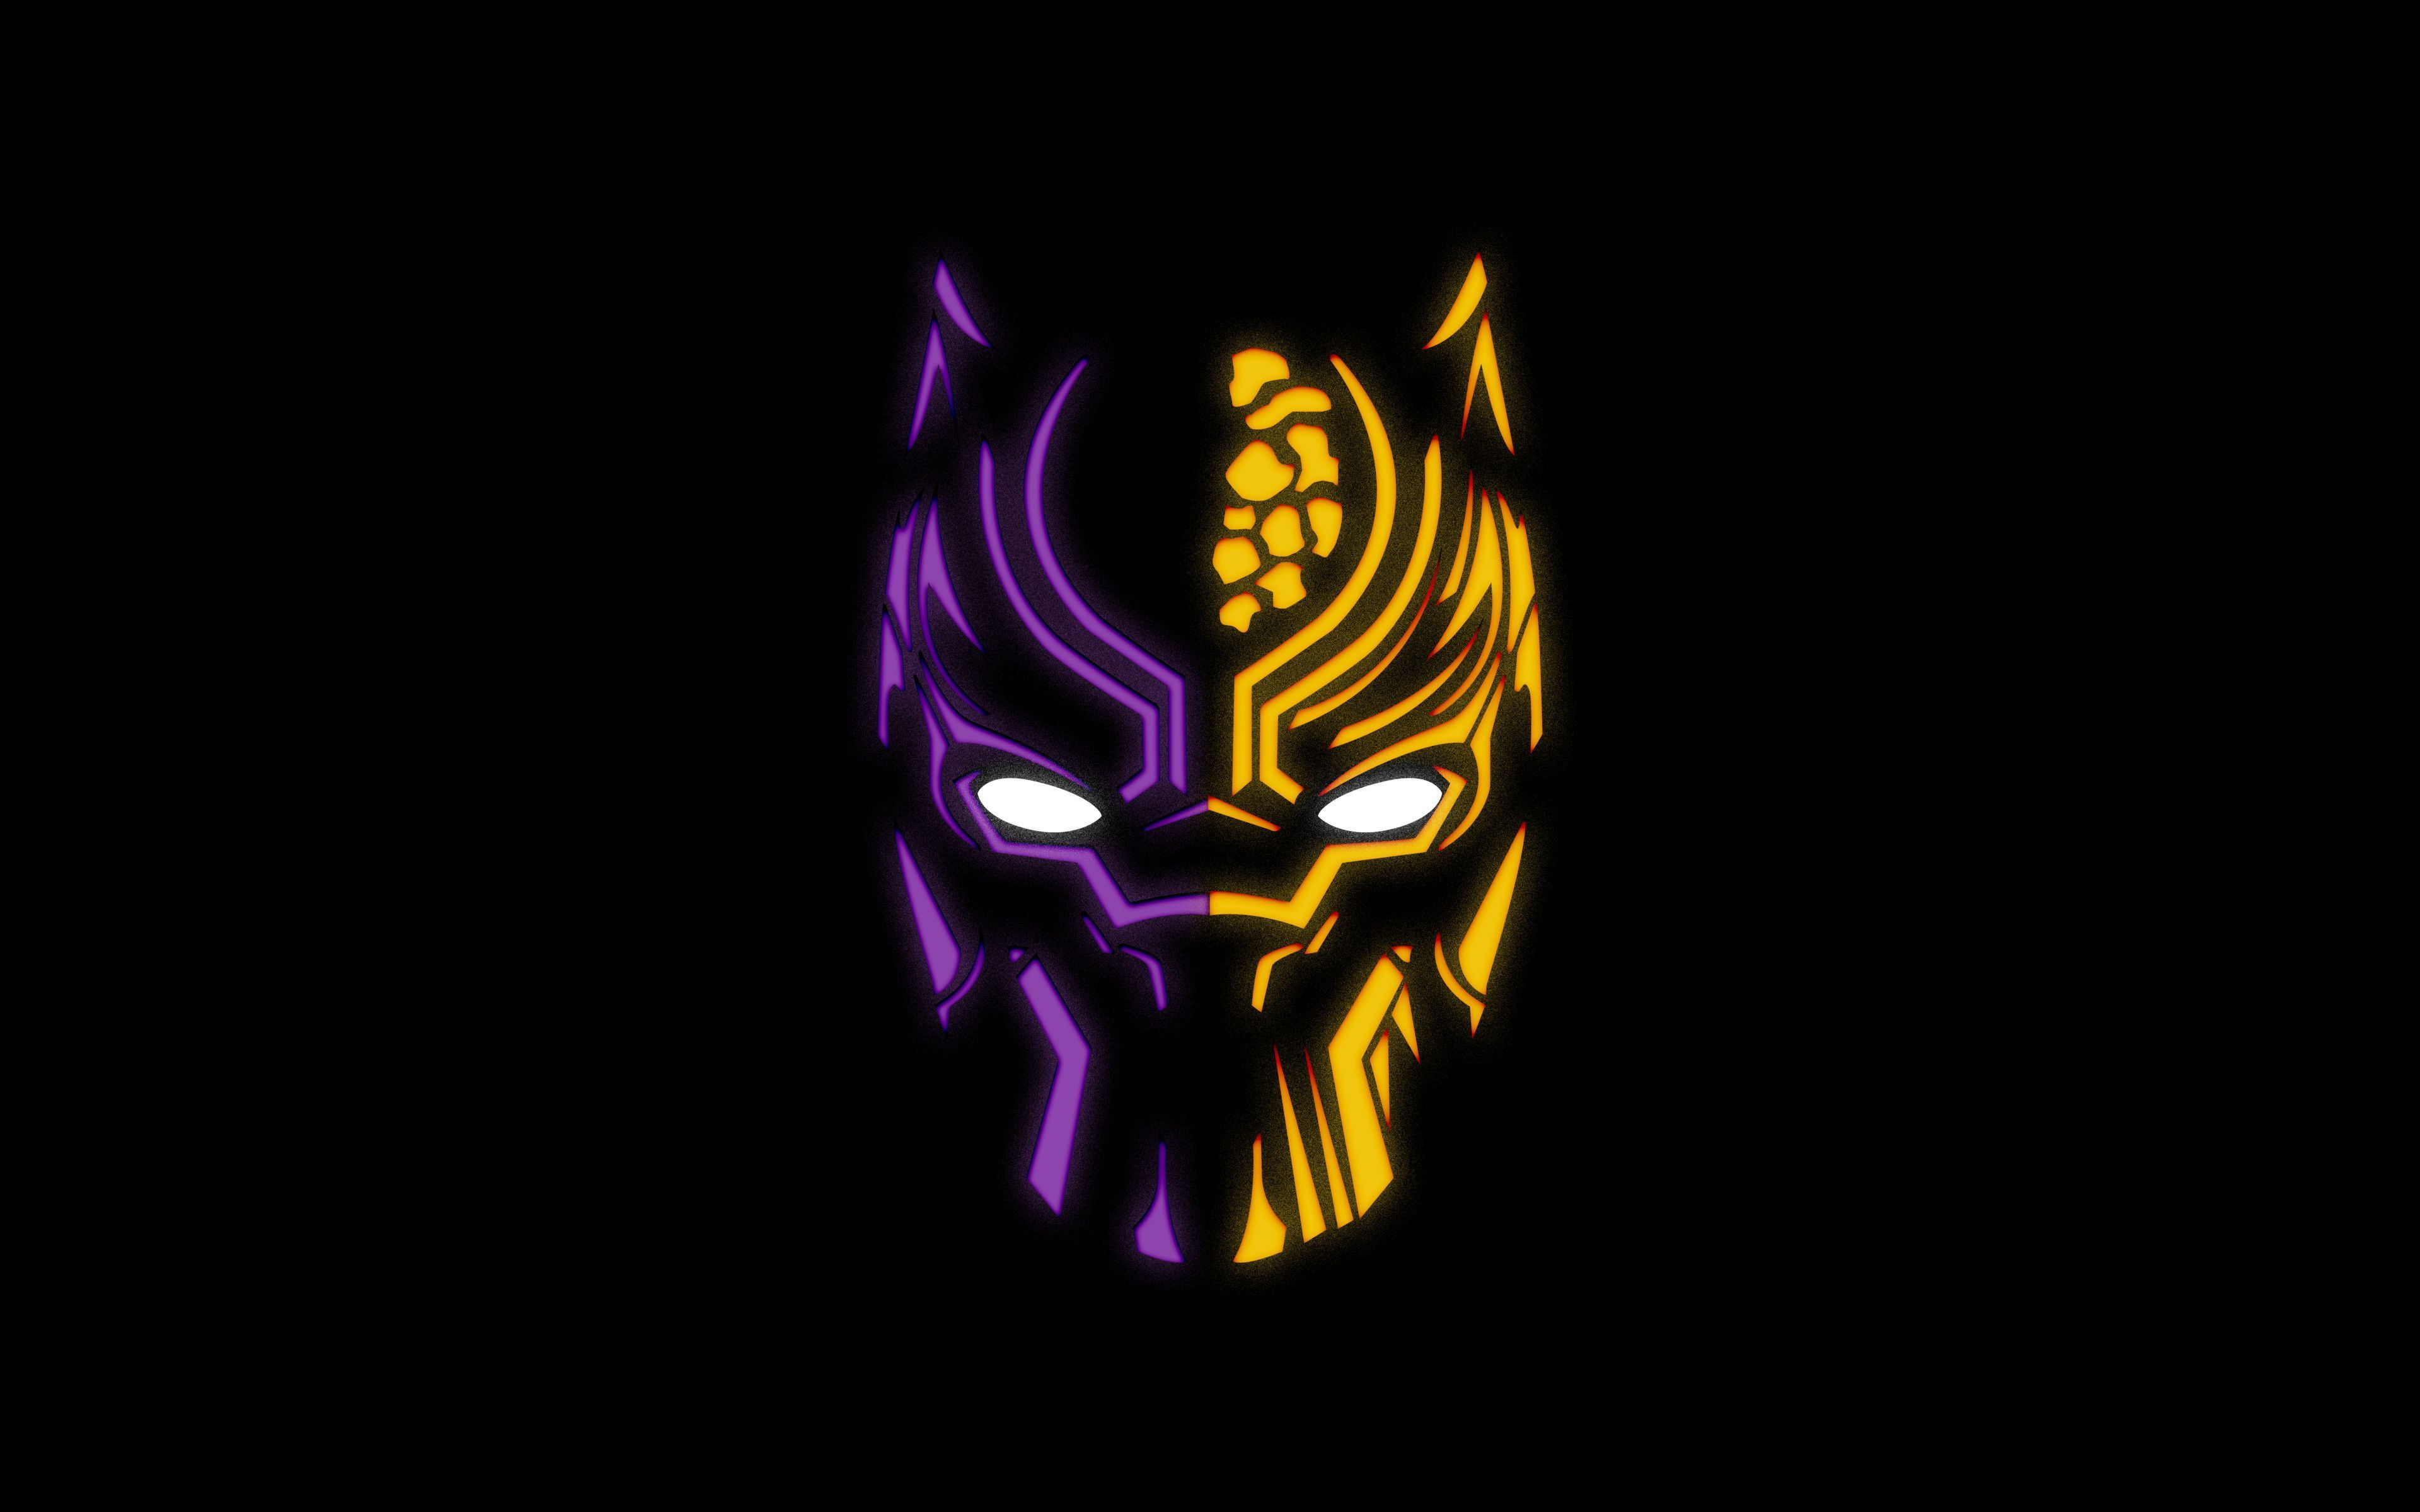 Black Panther 4K Ultra HD Dark Wallpapers - Top Free Black Panther